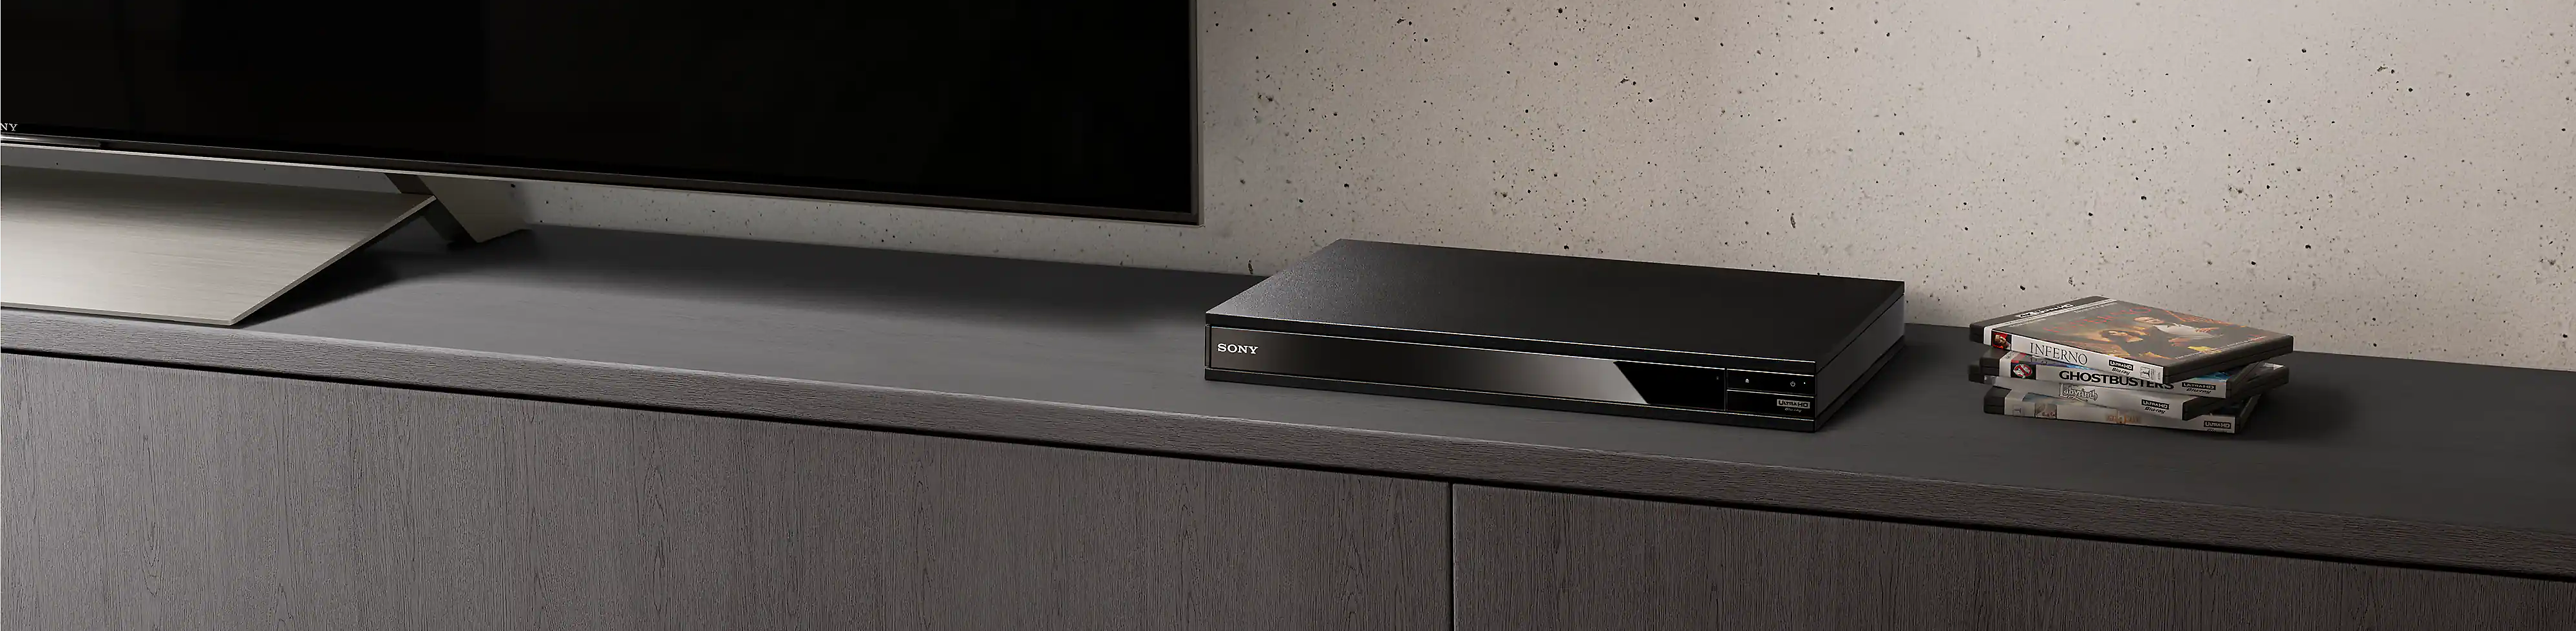 Um leitor Blu-ray Disc preto visível entre uma pilha de discos Blu-ray e uma TV preta.